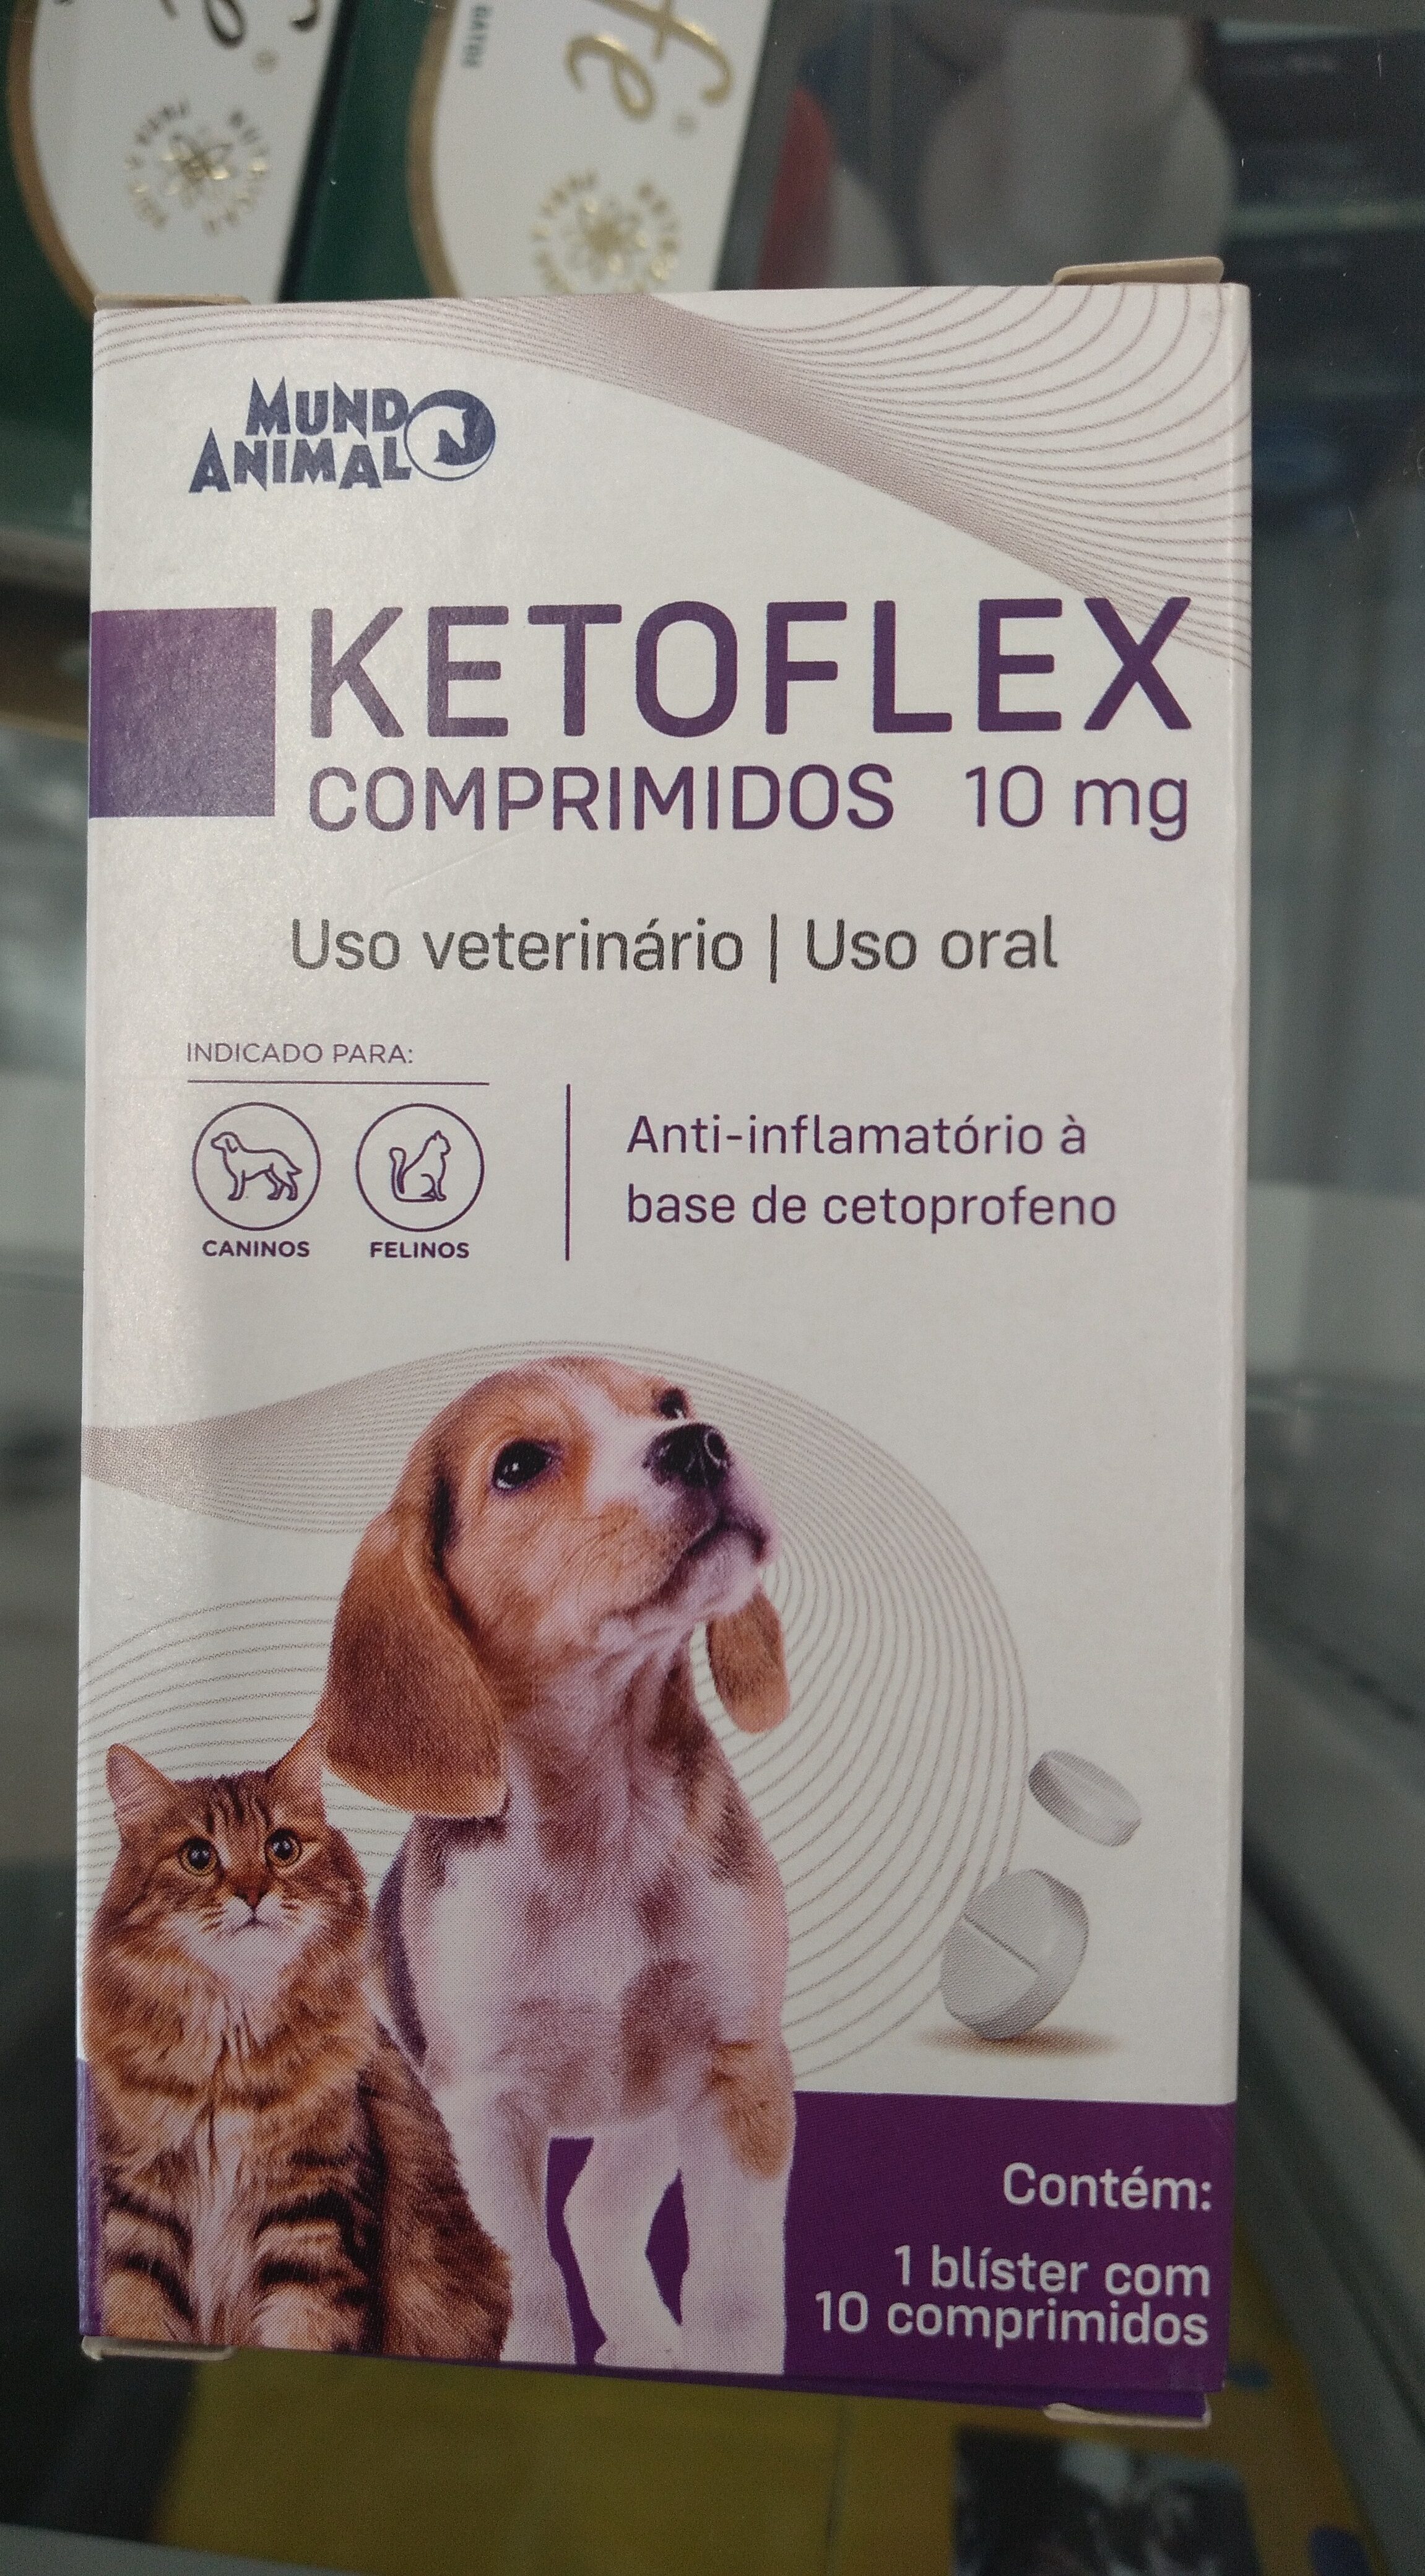 Med. Ketoflex 10comp - Product - pt